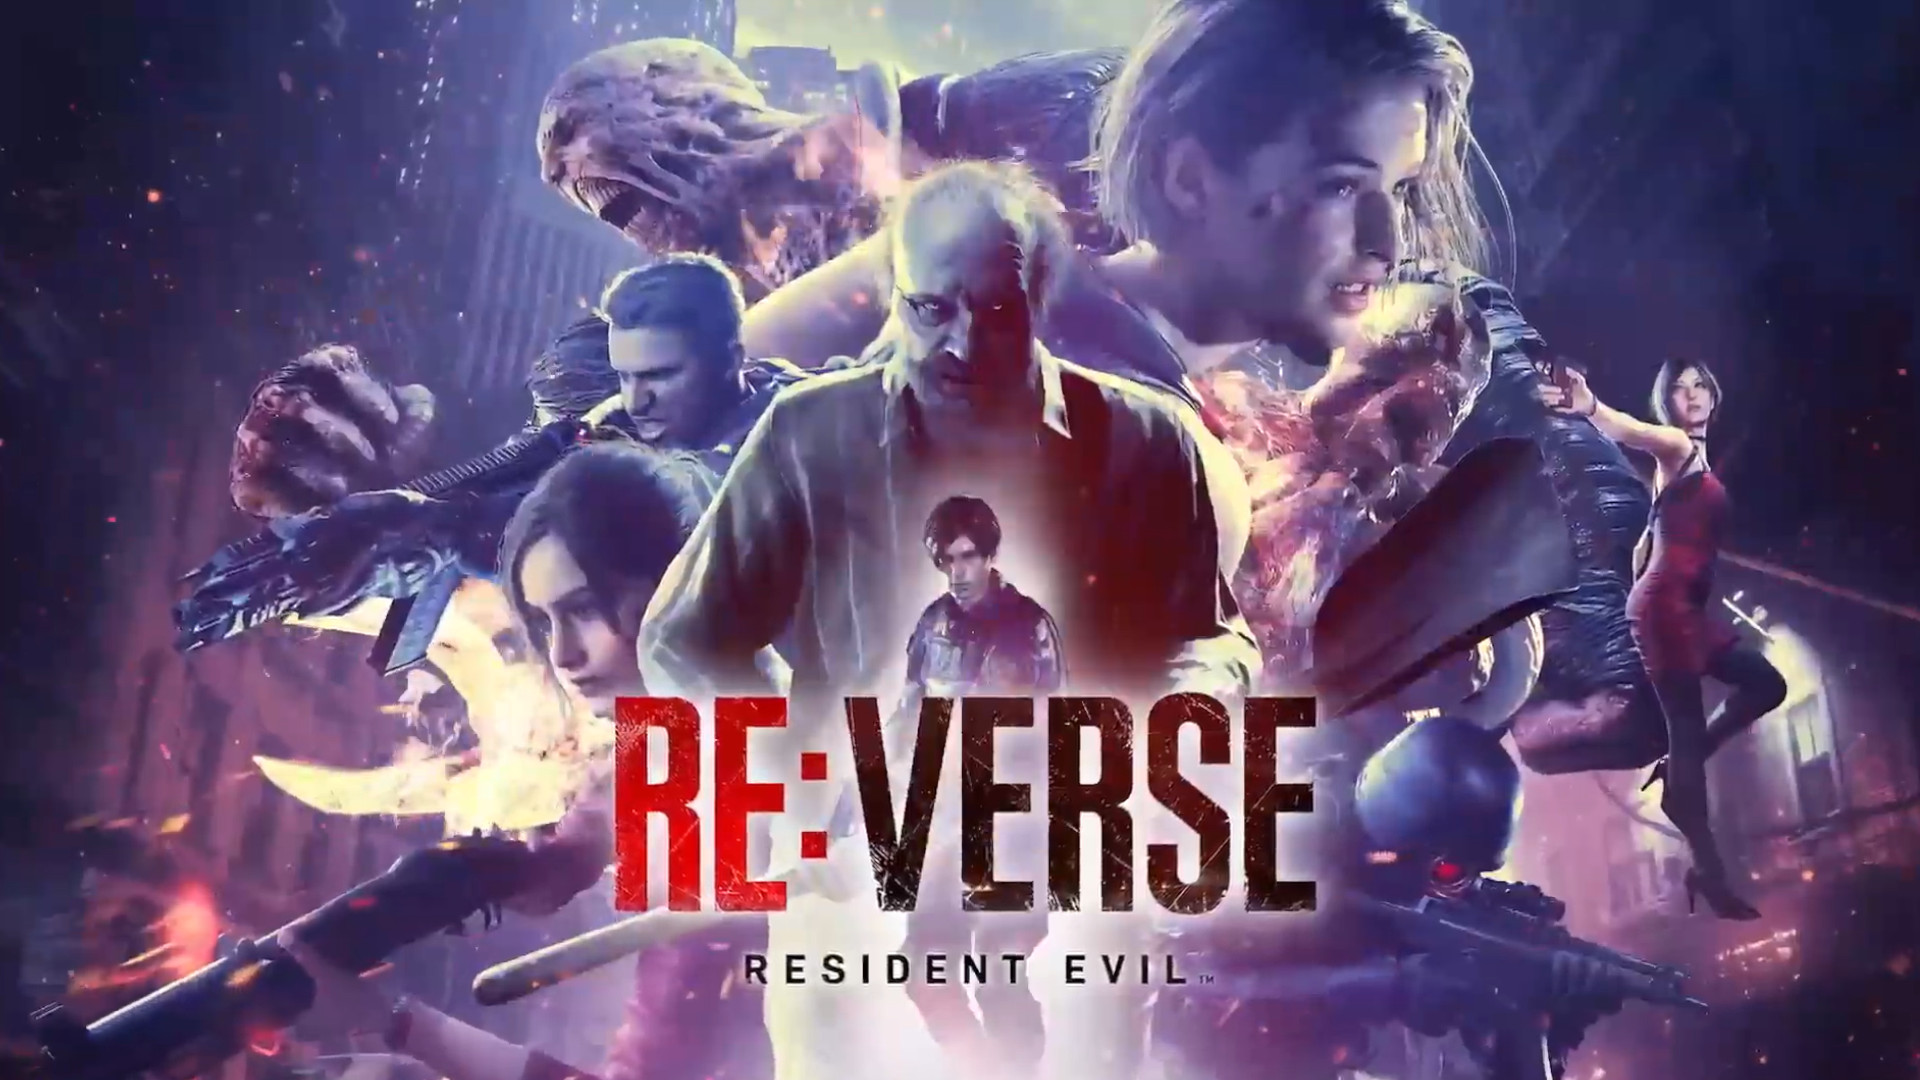 I-Reverse Evil Reverse